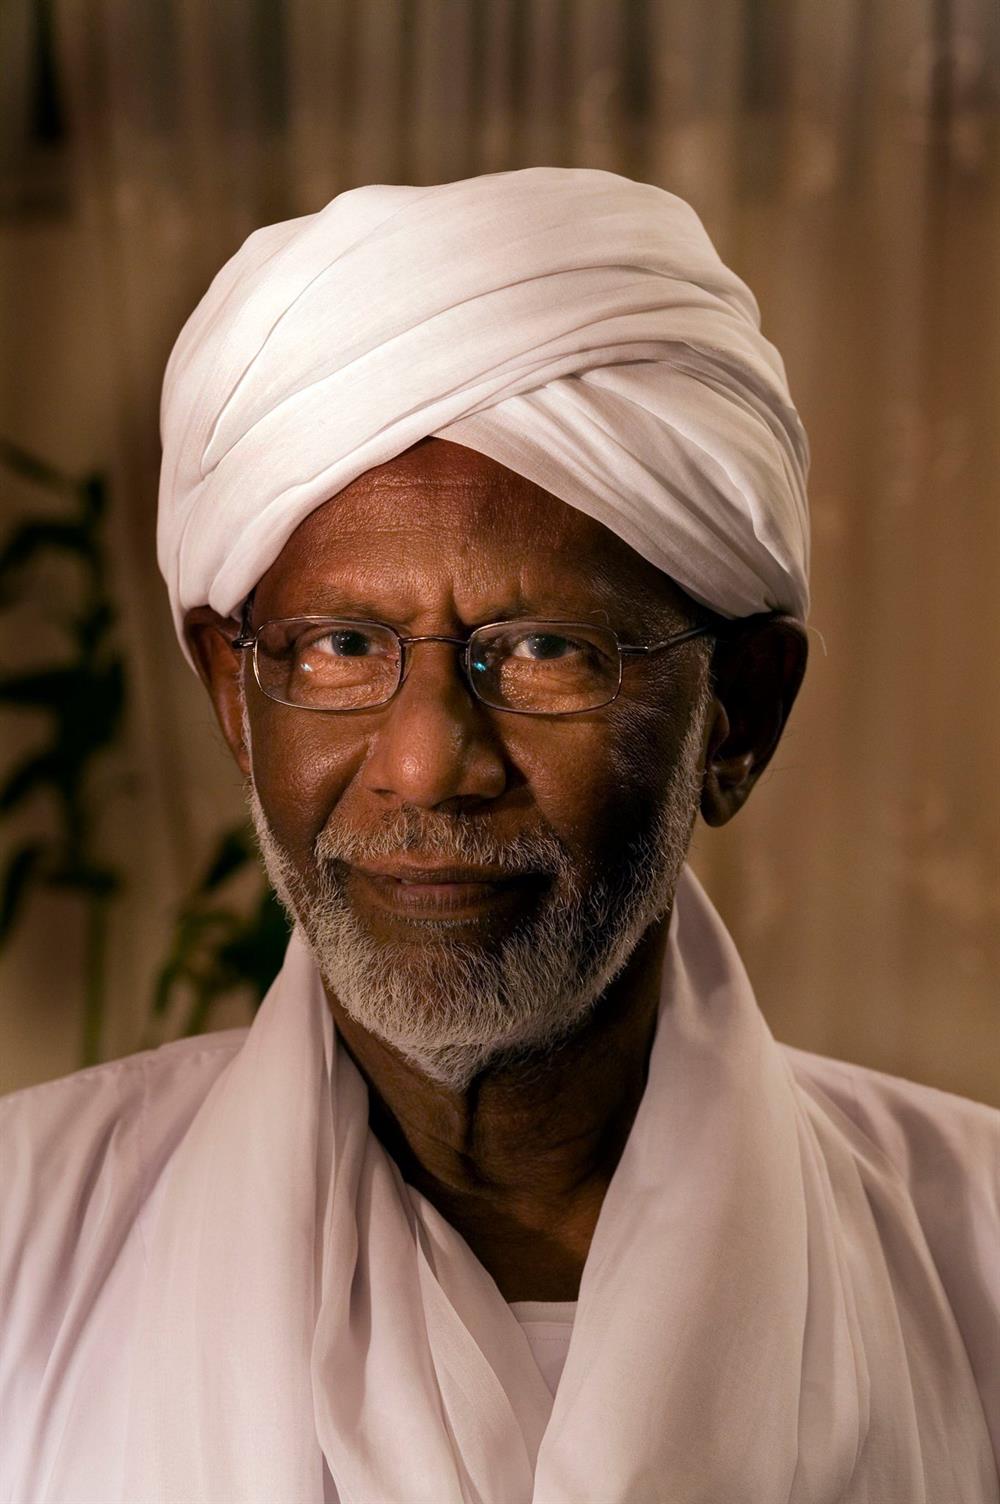 Hasan Turabi, Sudanlı İslâmî lider ve siyasetçi olmasının yanı sıra Sudan'ın tanınmış politik modern figürlerinden birisi olmuştur.